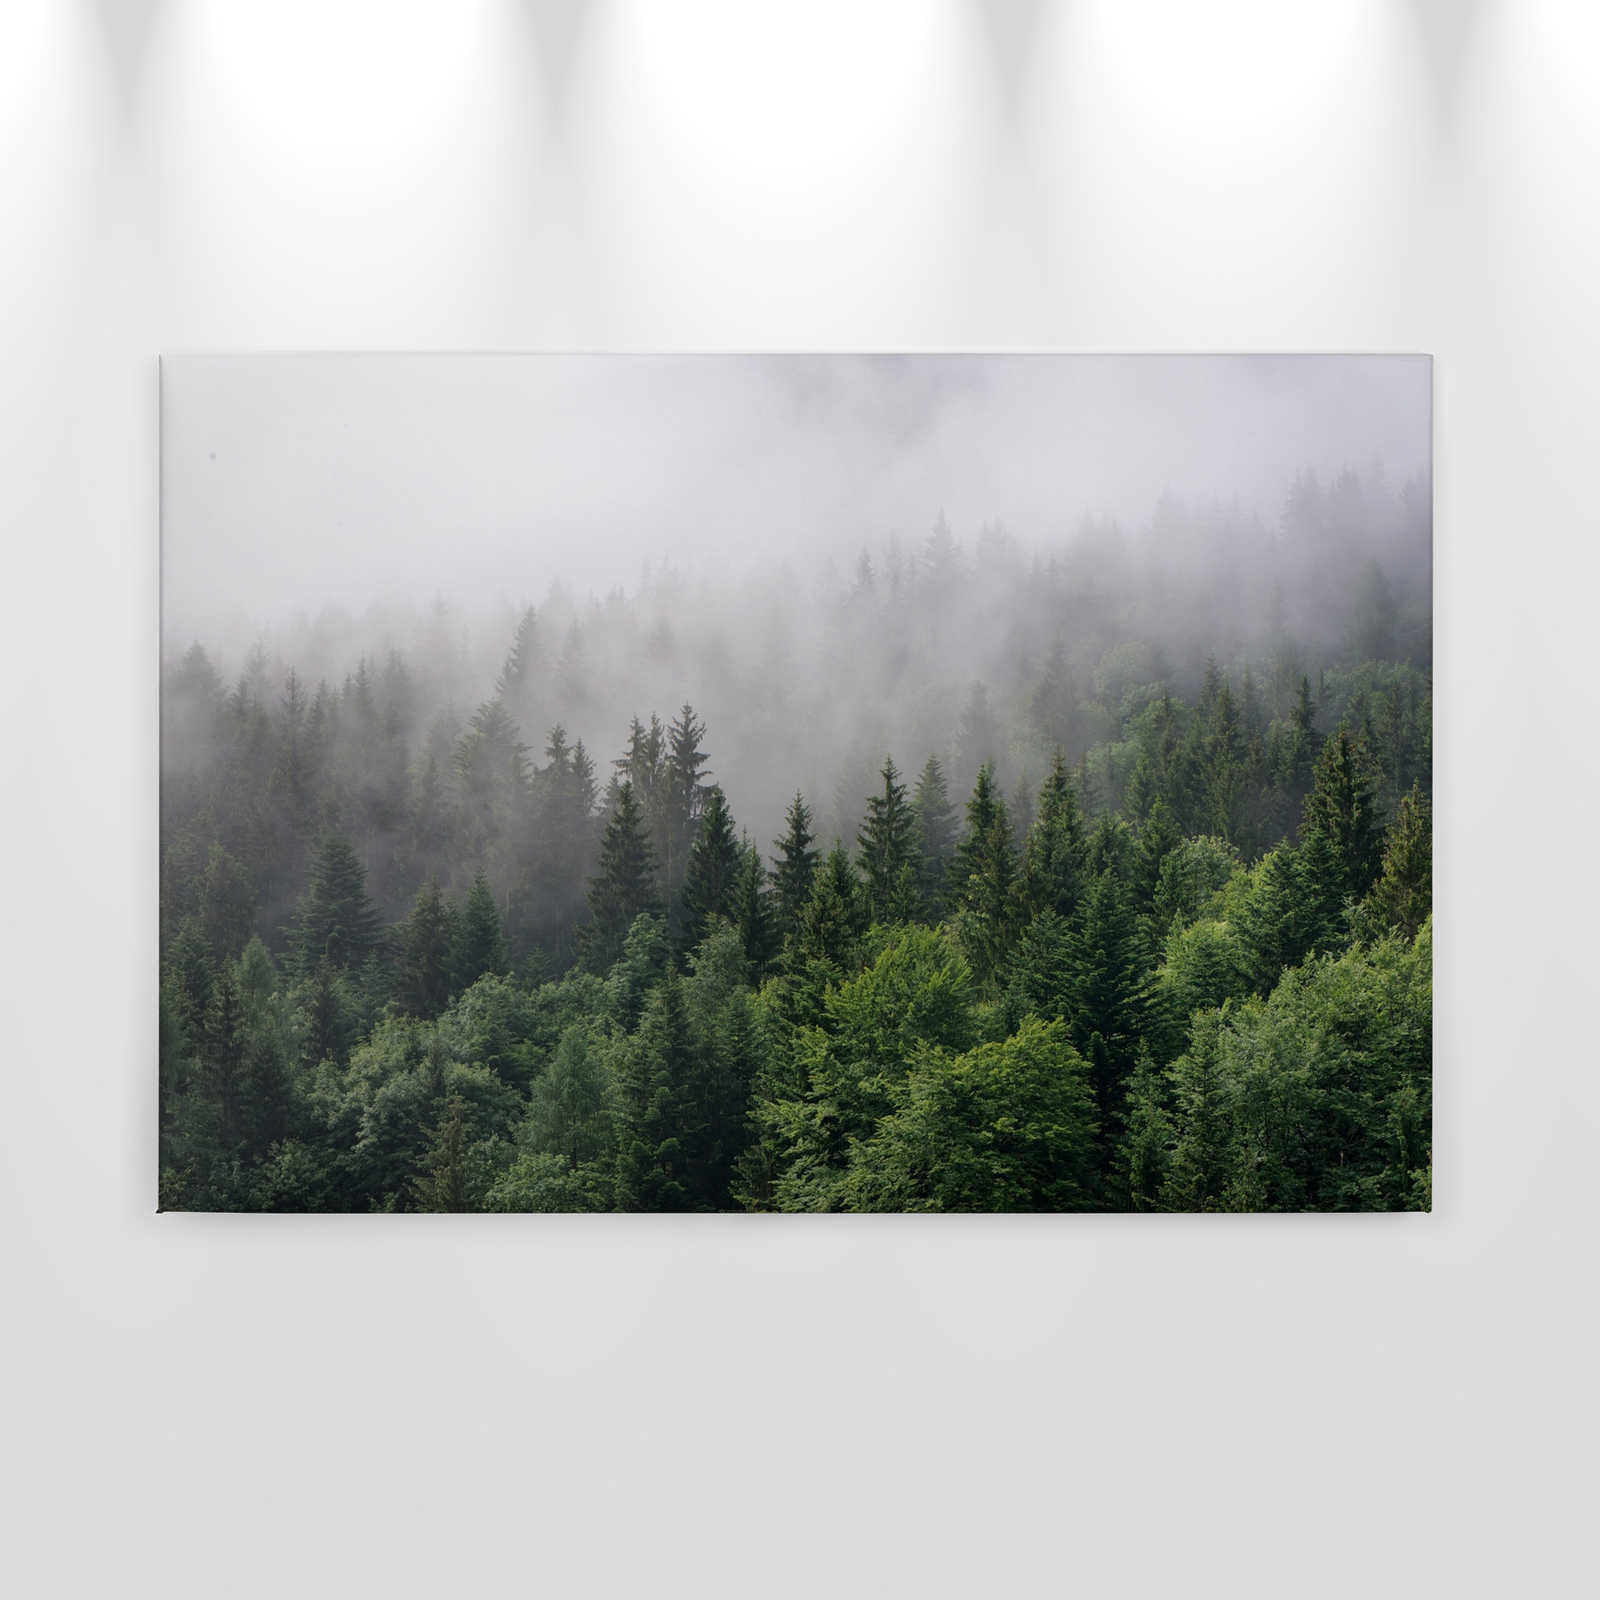             Tela con foresta dall'alto in una giornata di nebbia - 0,90 m x 0,60 m
        